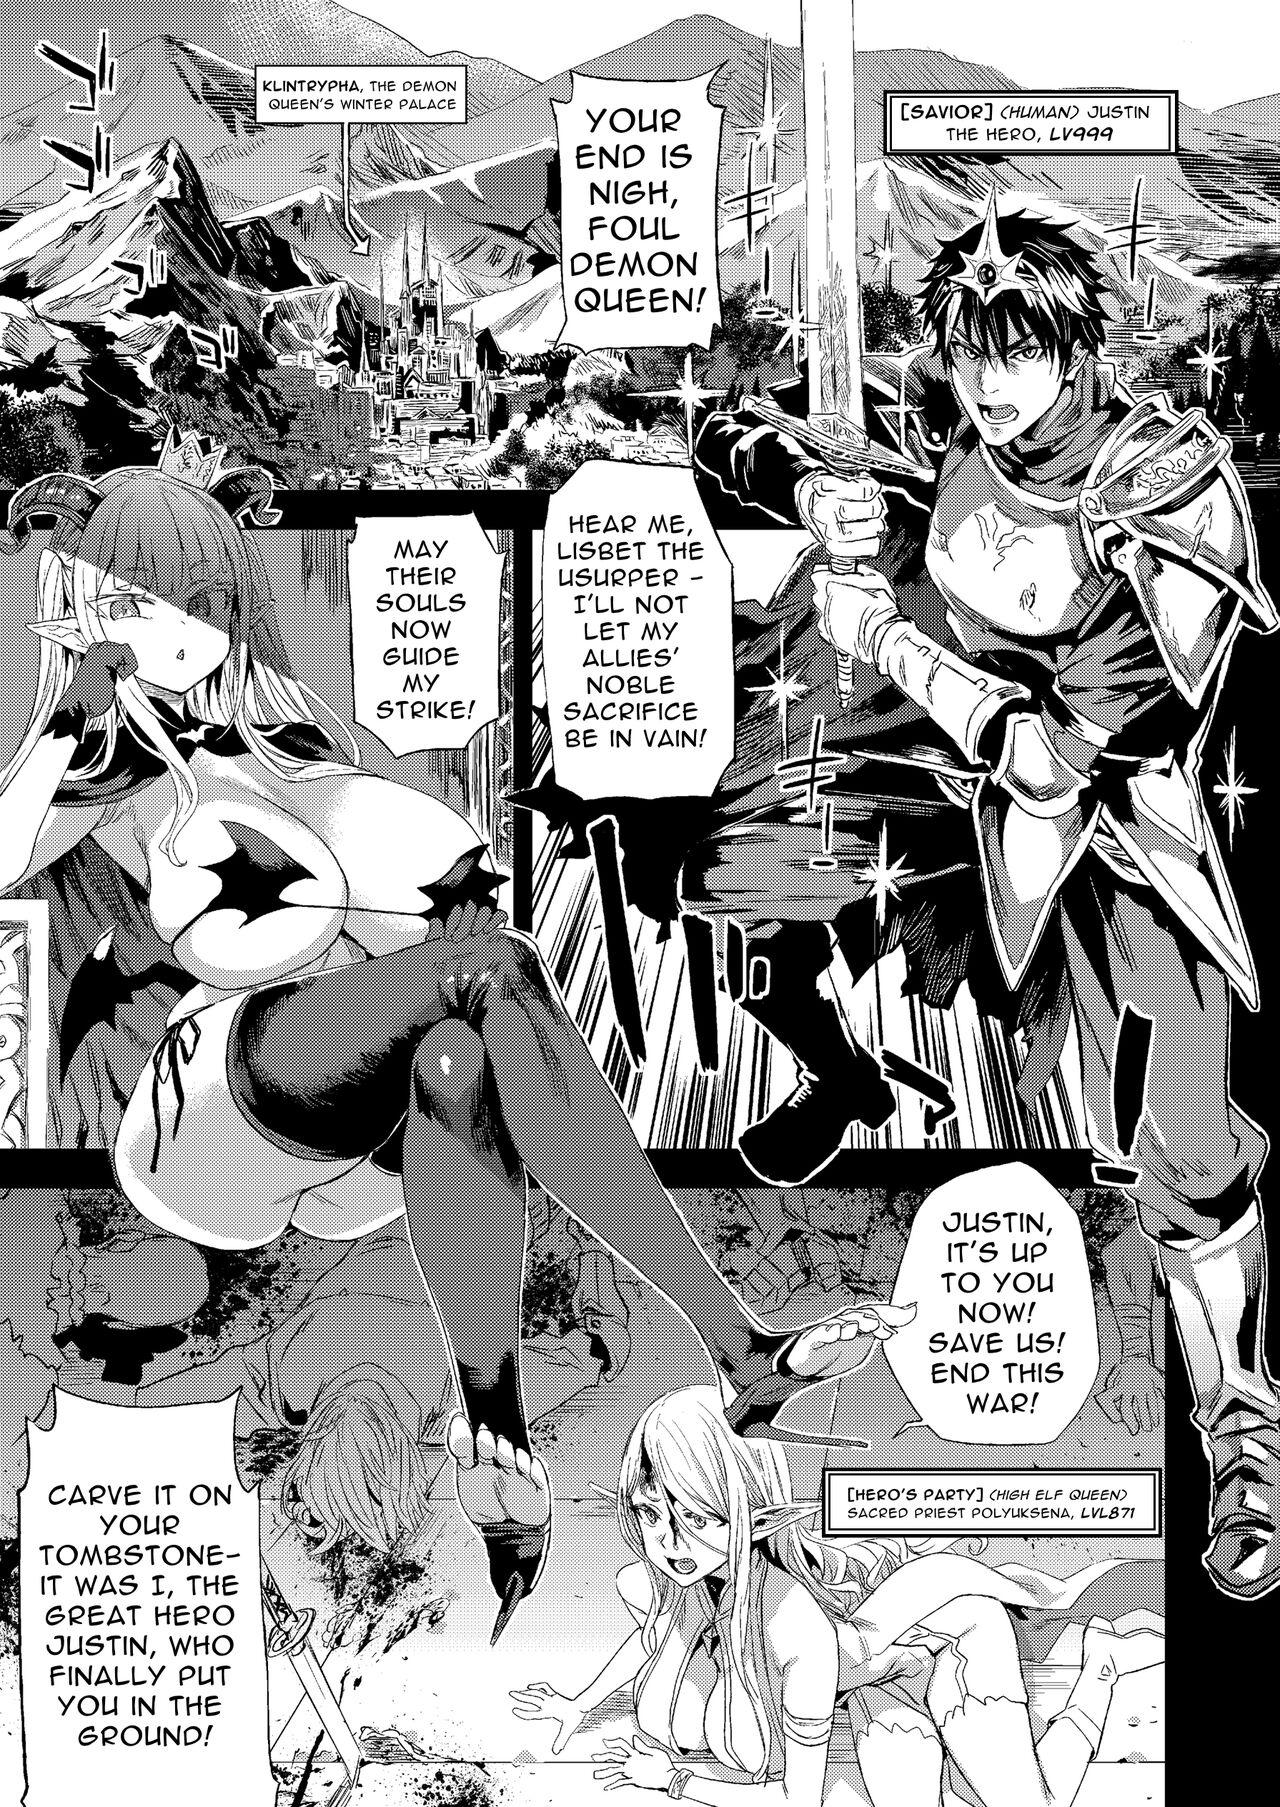 Cameltoe Succubus Queen vs Goblin Grunts - Original Siririca - Page 3